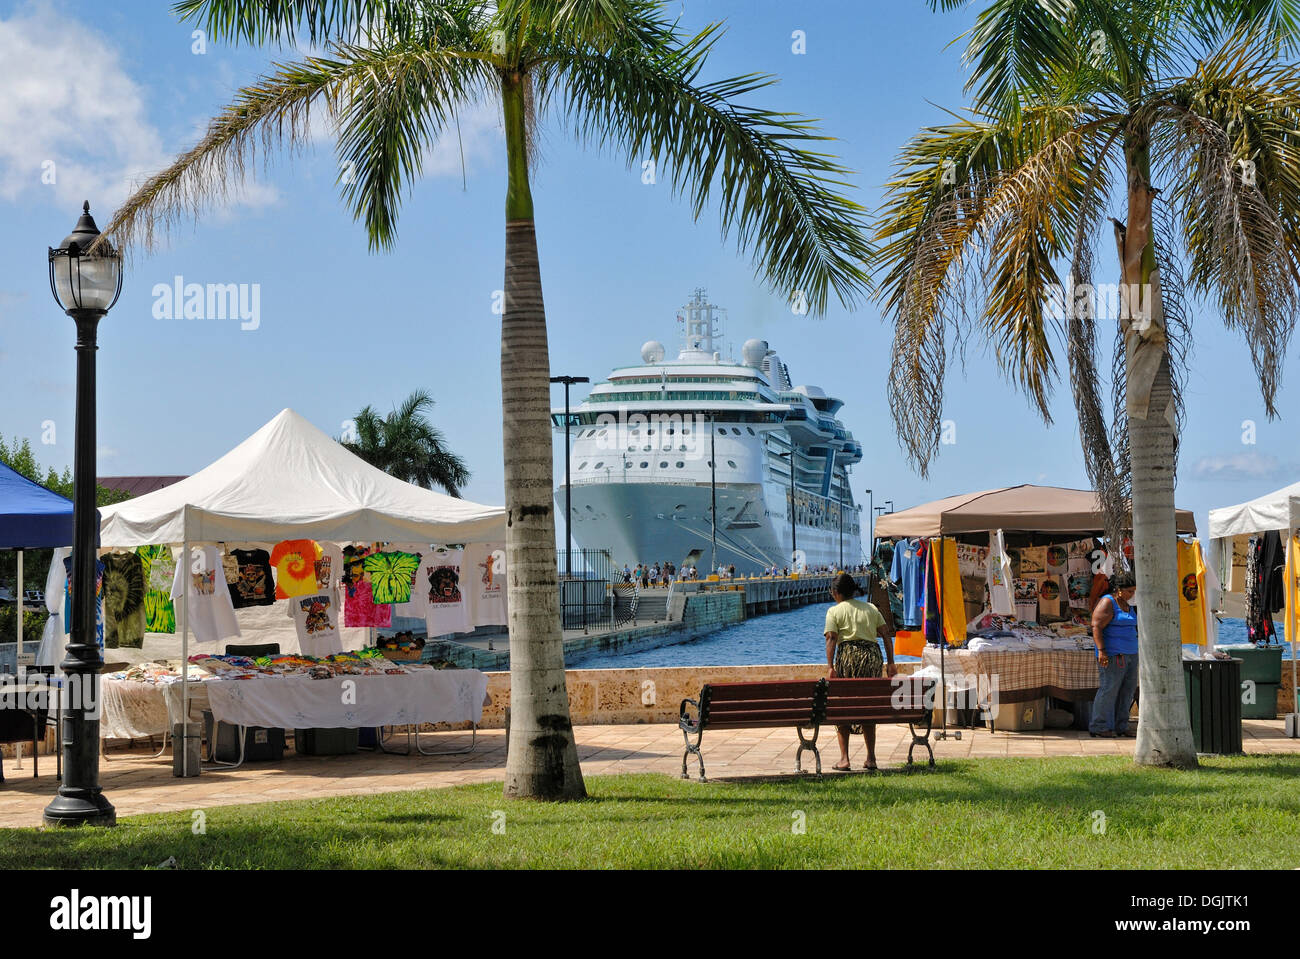 Kreuzfahrt Schiff und Souvenir-Stände auf der Anklagebank in Frederiksted, Insel St. Croix, Amerikanische Jungferninseln, USA Stockfoto